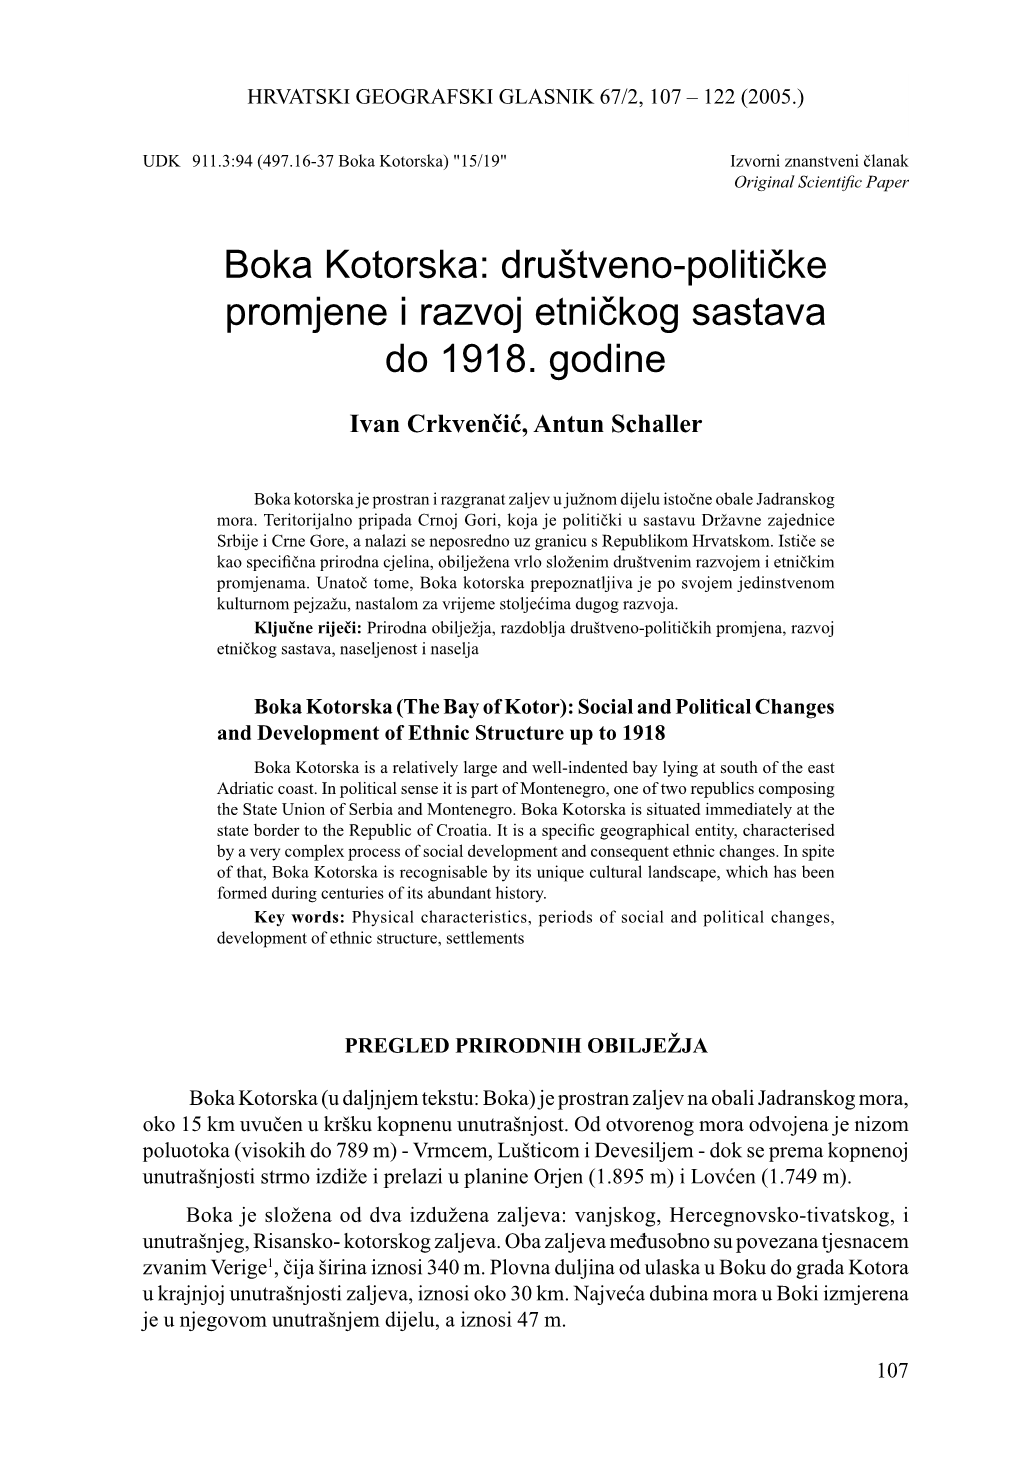 Boka Kotorska: Društveno-Političke Promjene I Razvoj Etničkog Sastava Do 1918